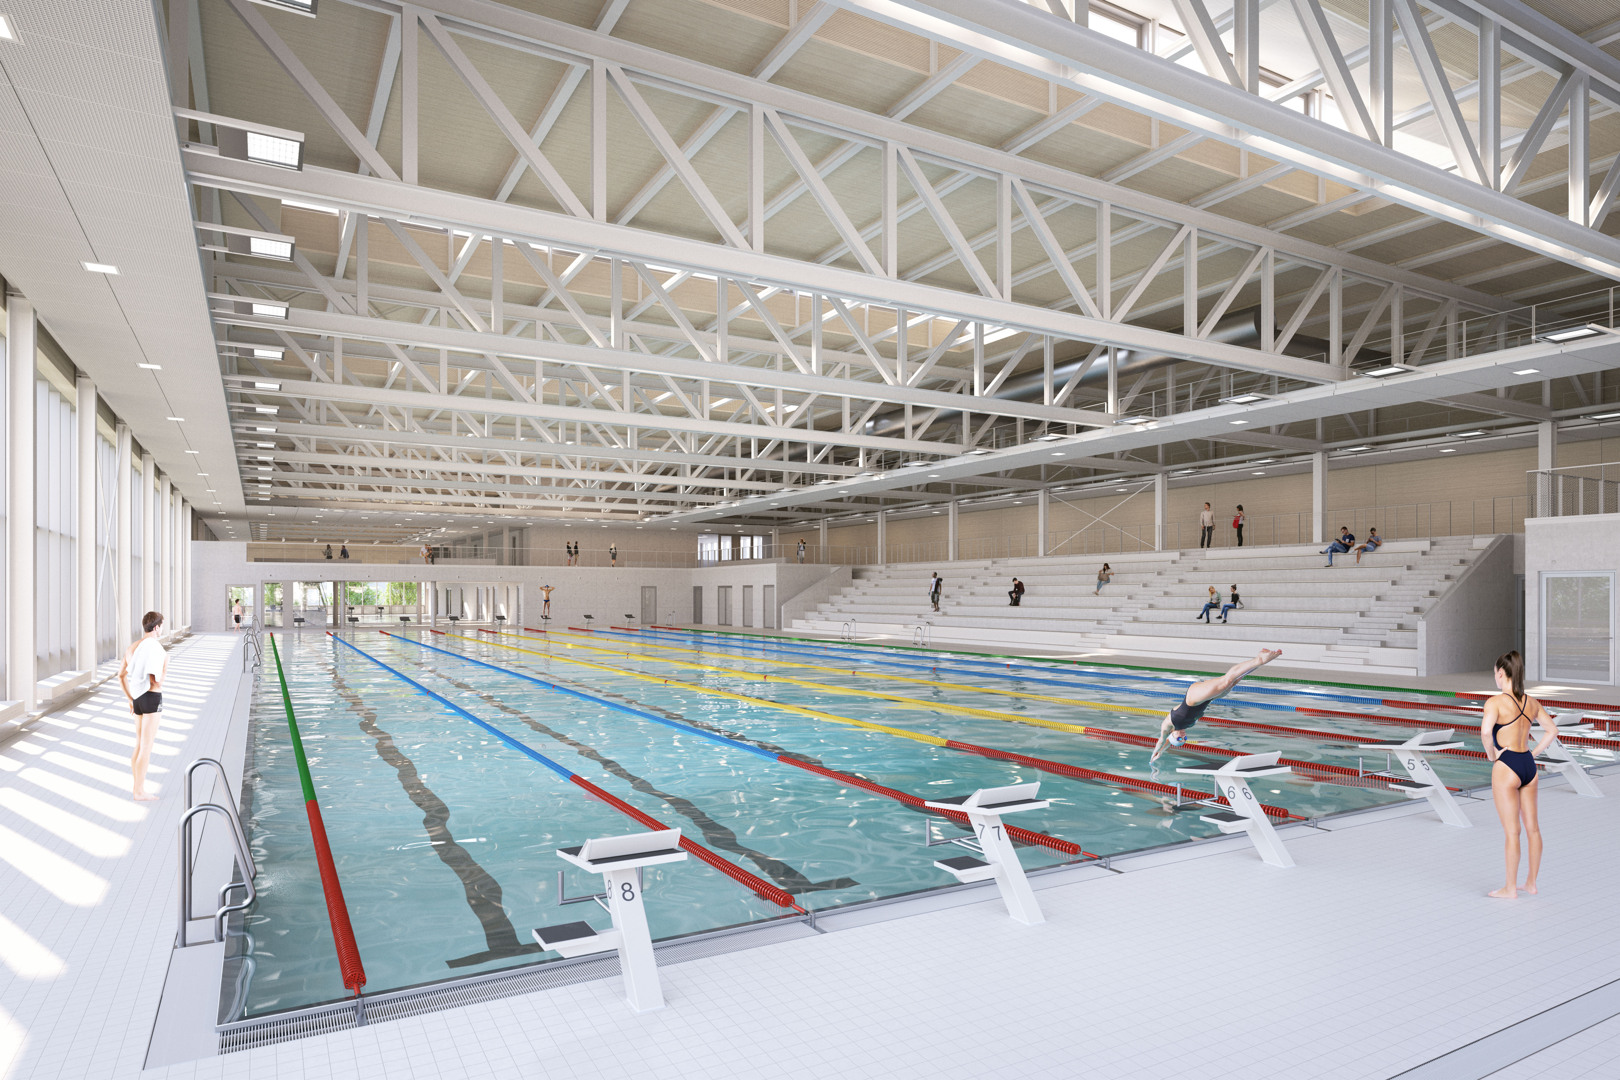 Im NeckarPark in Stuttgart entsteht ein wettkampffähiges Sporthallenbad. Entwurf der ARGE Sportbad NeckarPark © vizlab, Kassel